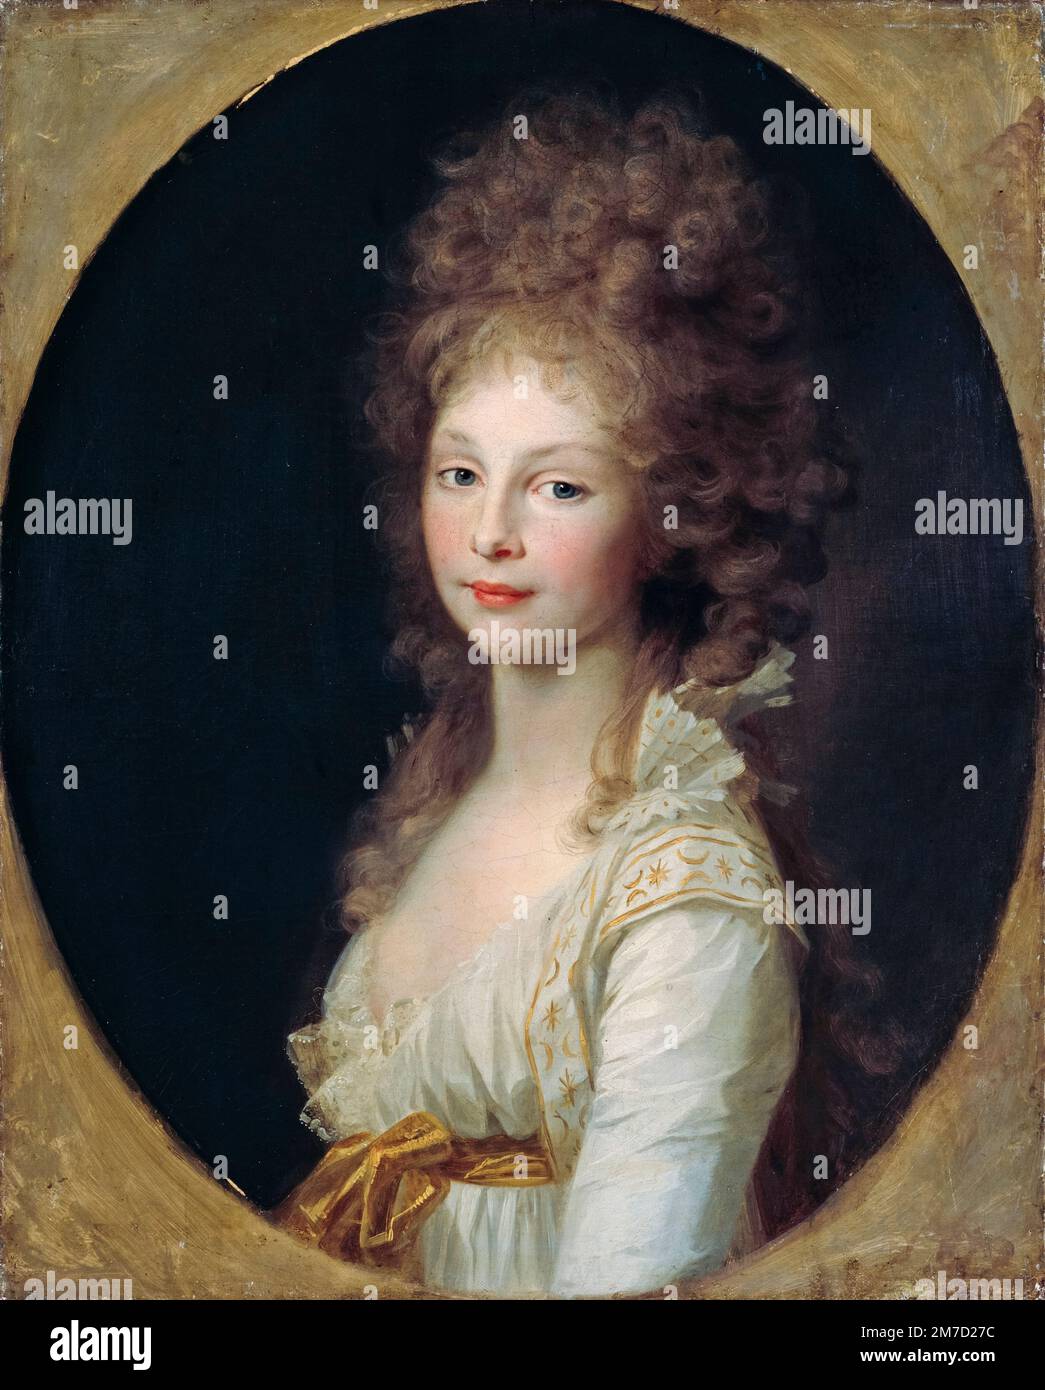 Princess Frederica Louise Wilhelmina of Orange-Nassau (1770-1819), portrait painting in oil on canvas by Johann Friedrich August Tischbein, 1797-1798 Stock Photo